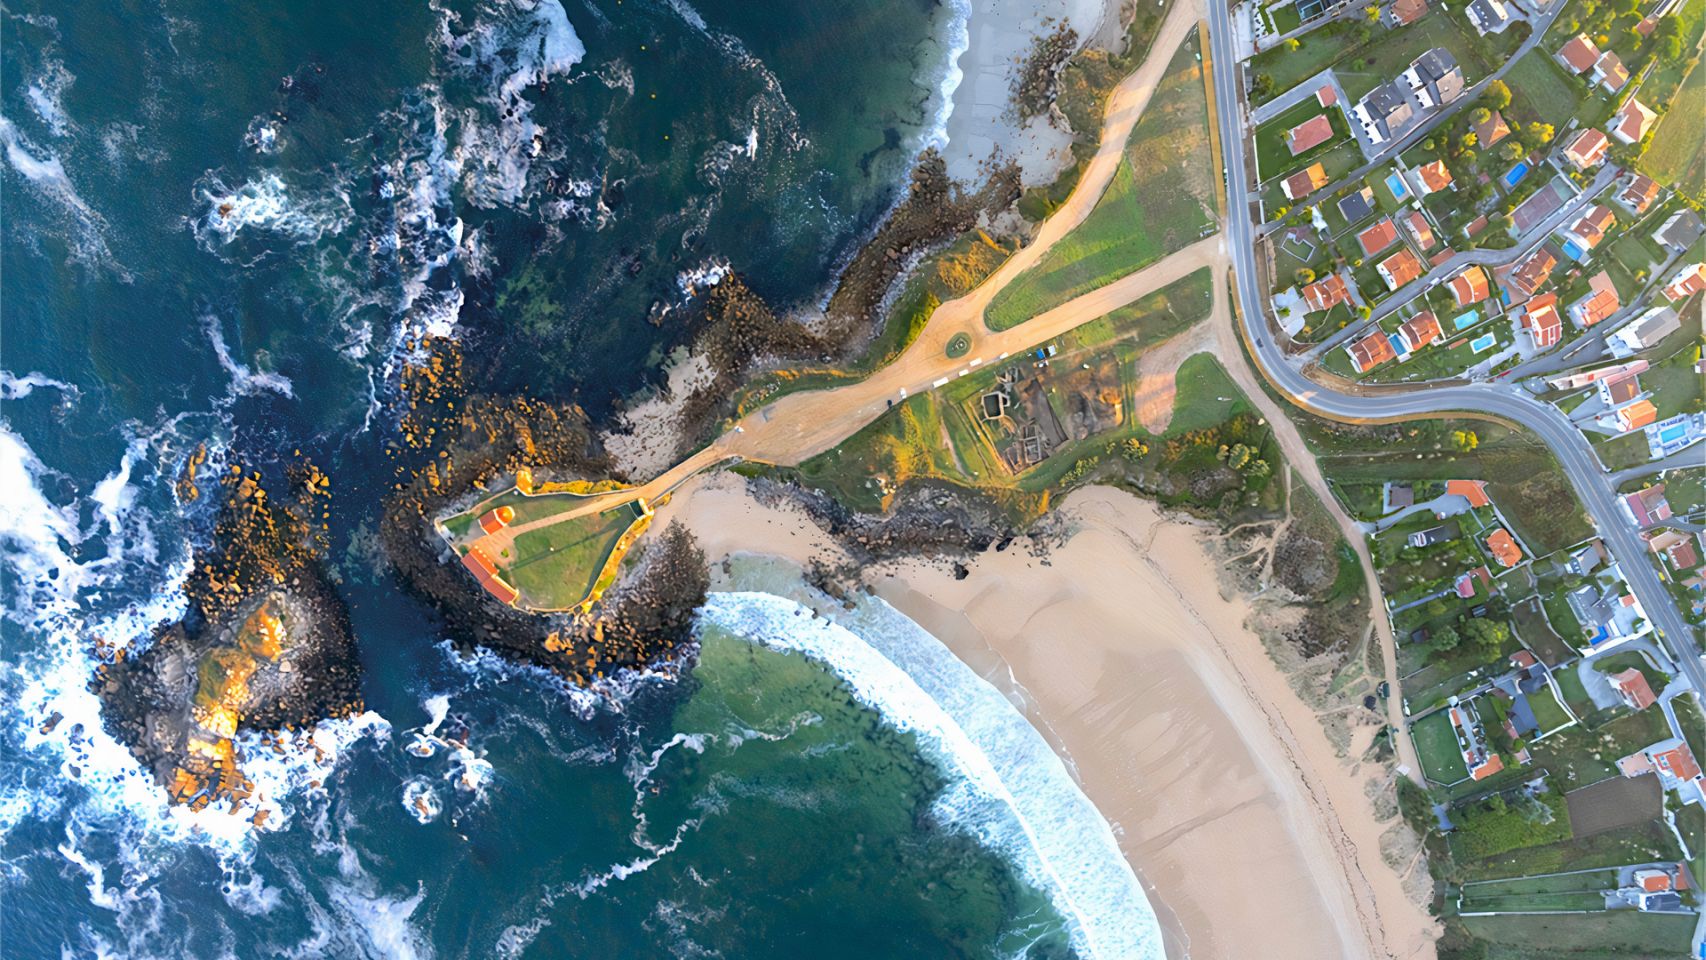 Vista aérea yacimiento de A Lanzada. Turismo Rías Baixas